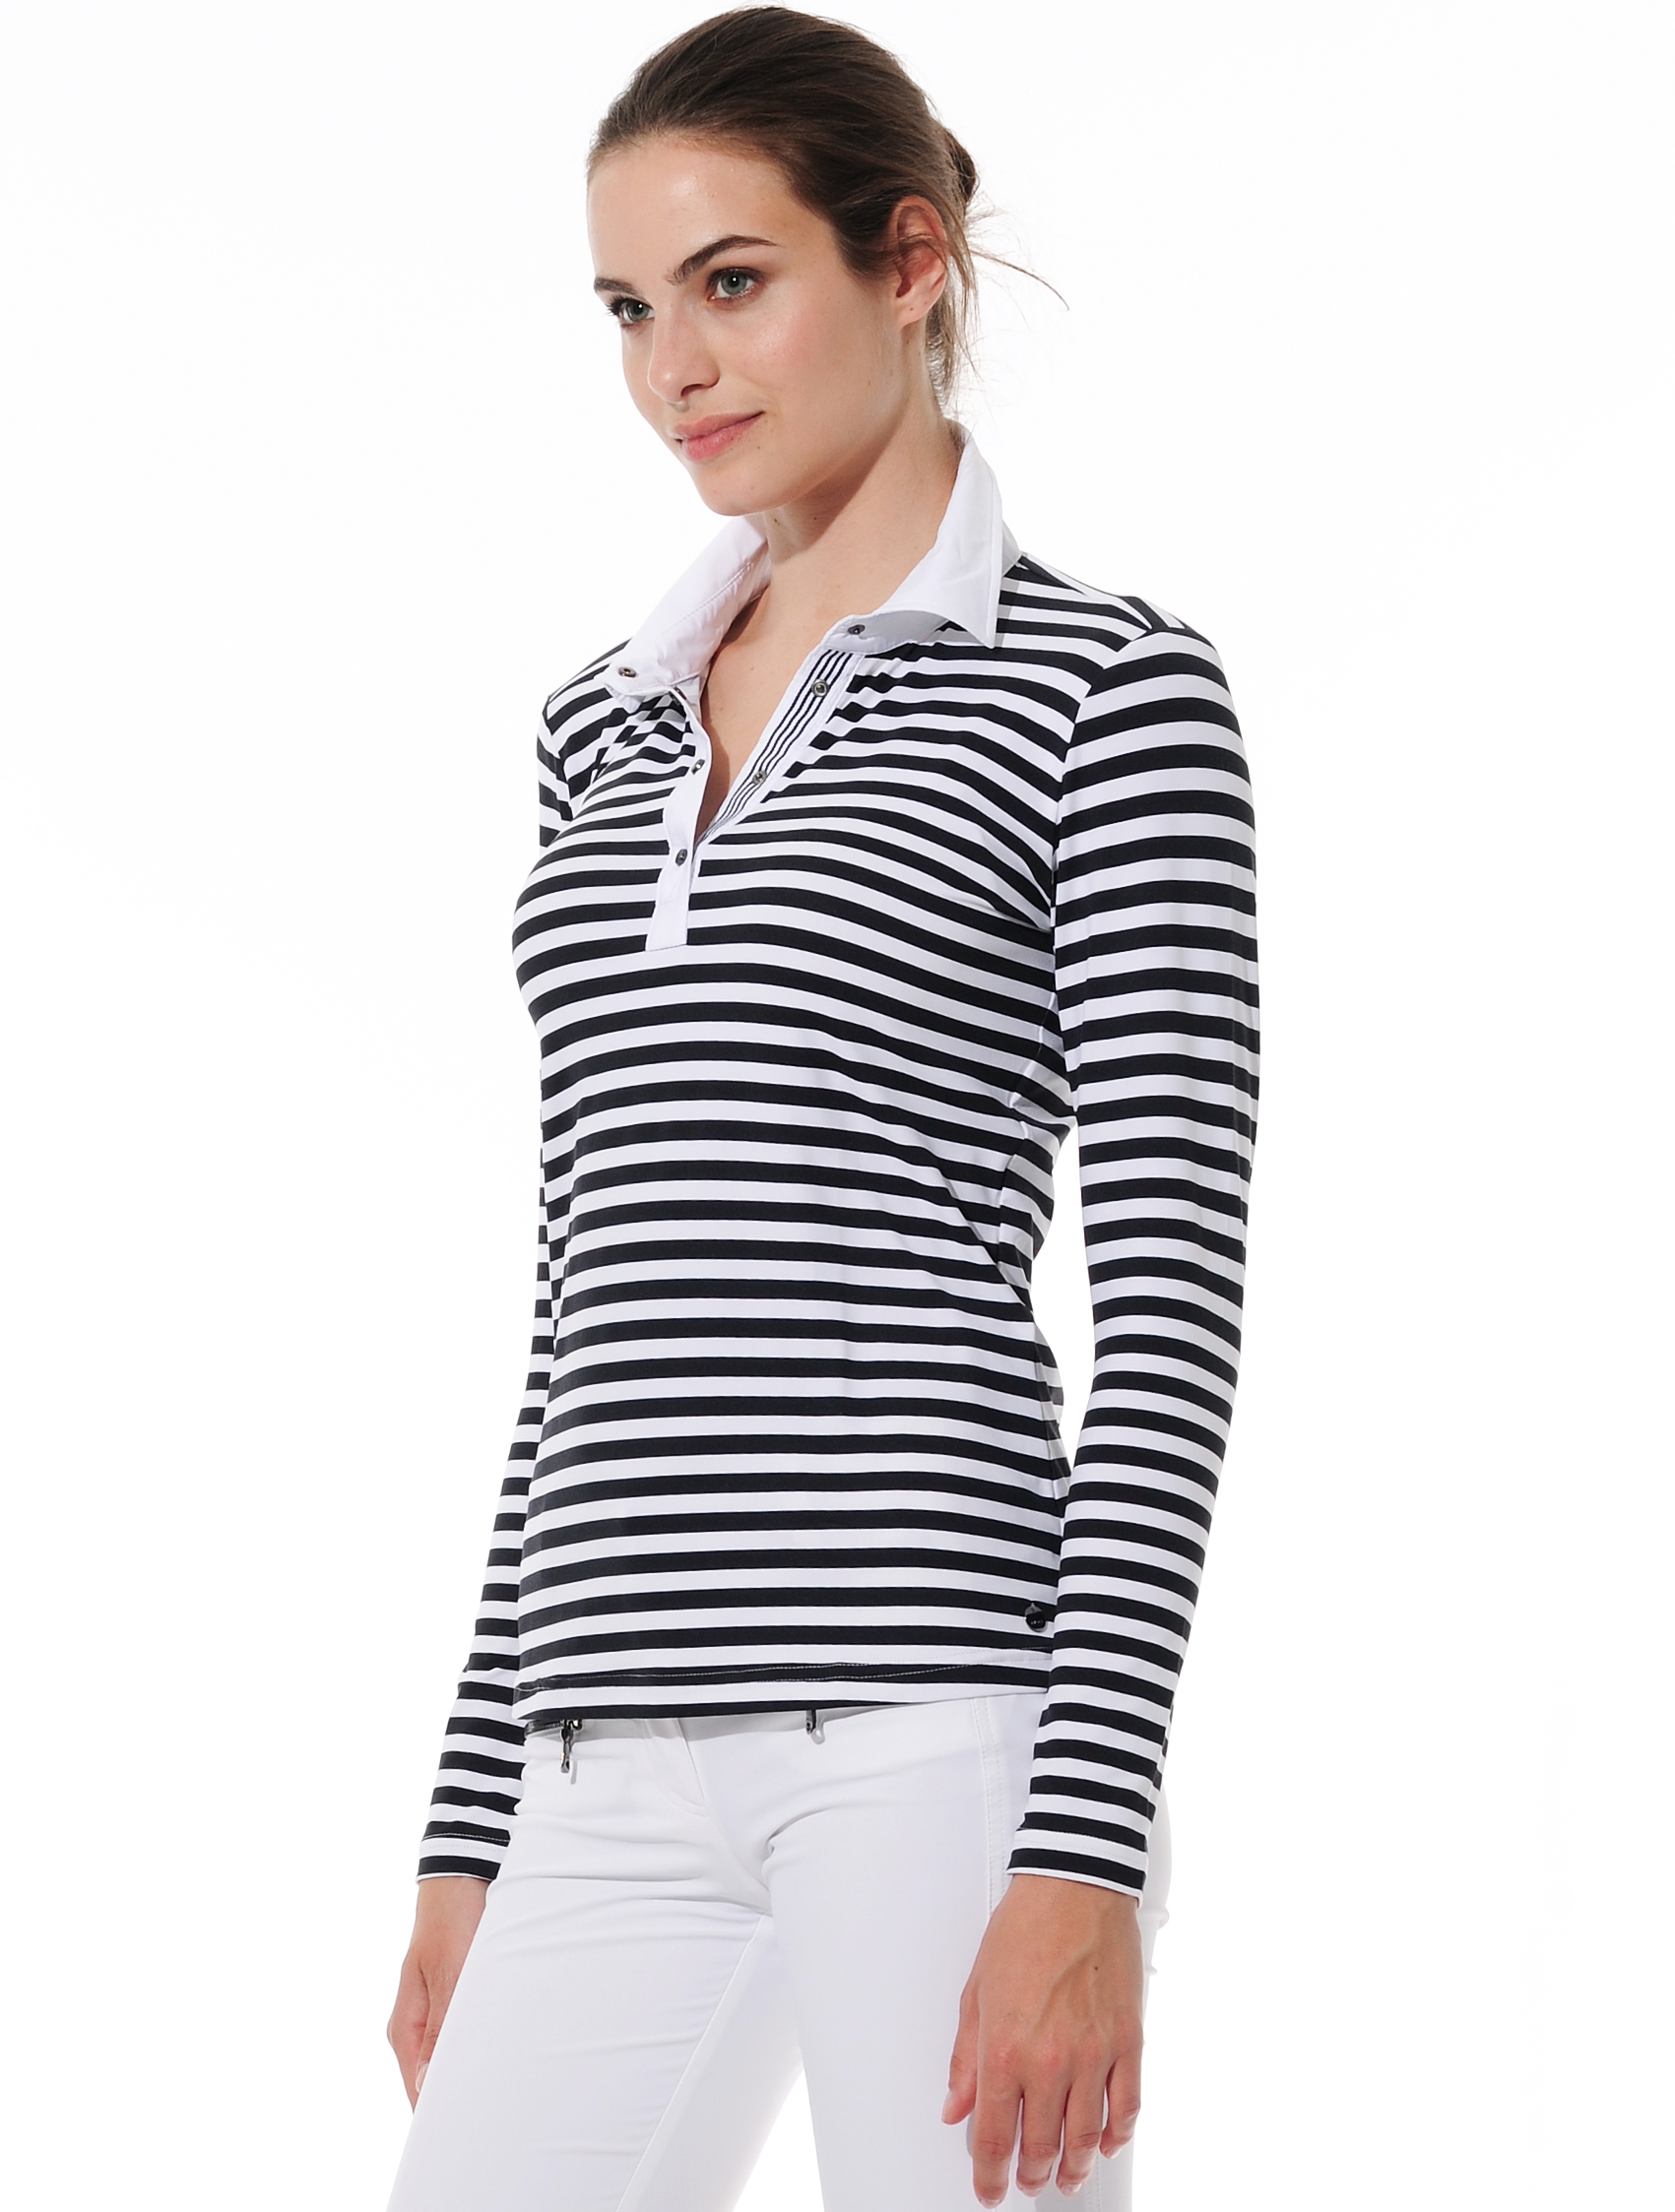 Striped print polo shirt black/white 